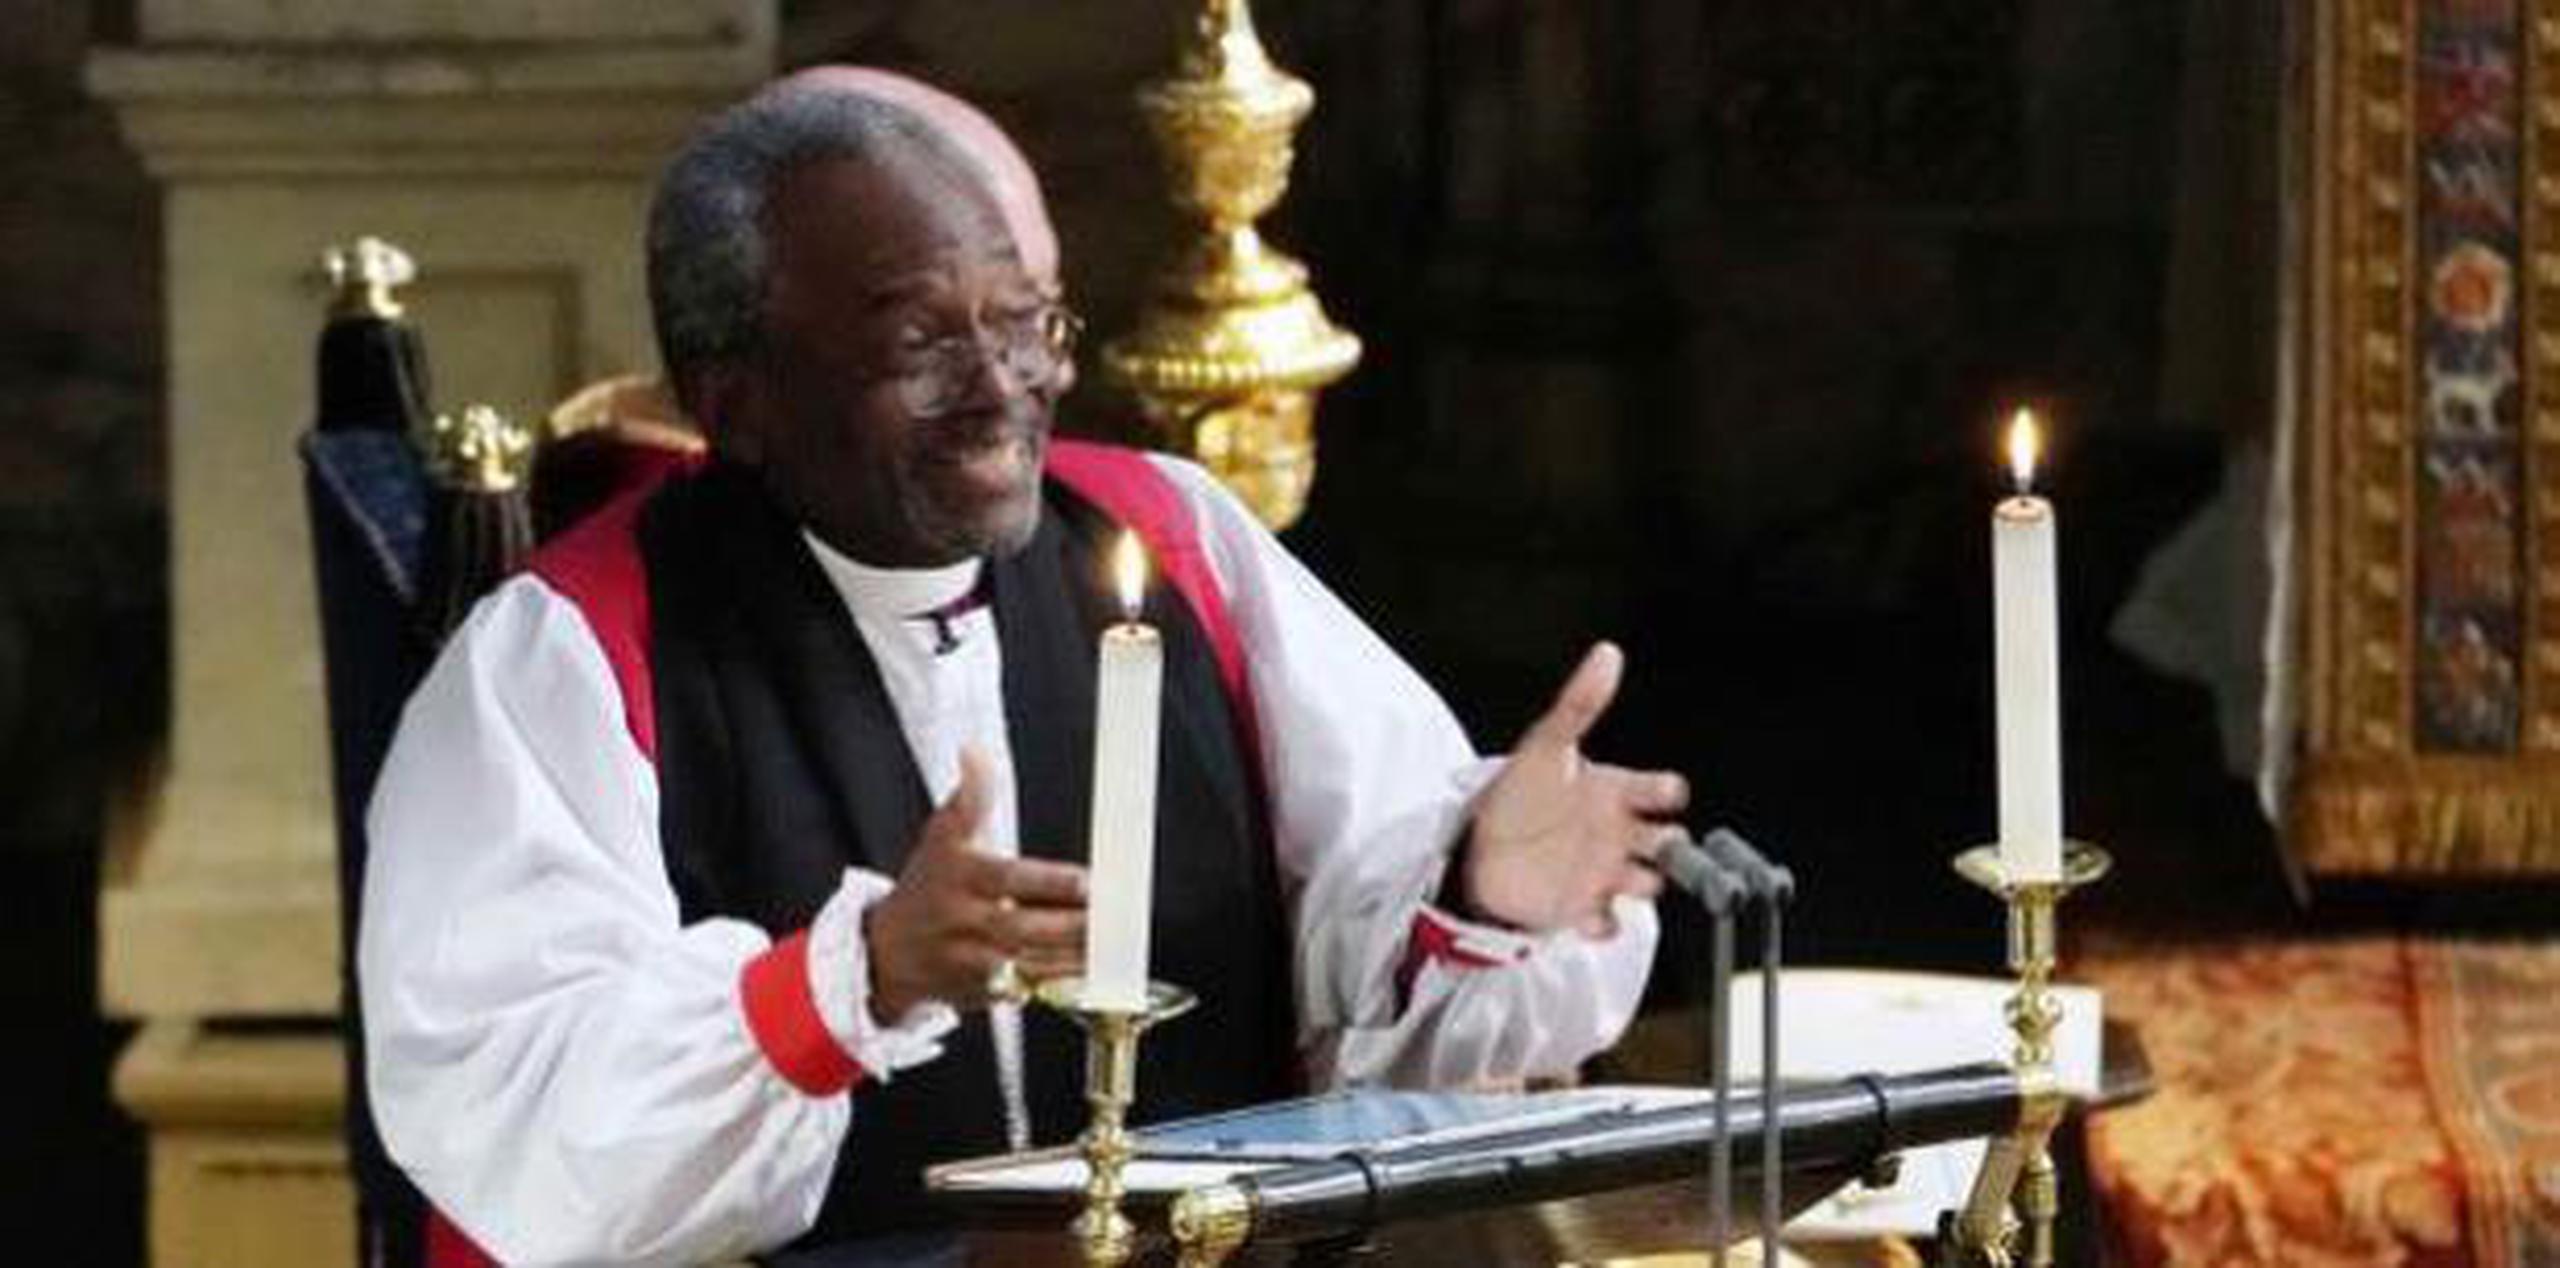 El reverendo es el primer líder negro de la Iglesia Episcopal en Estados Unidos. (AP)